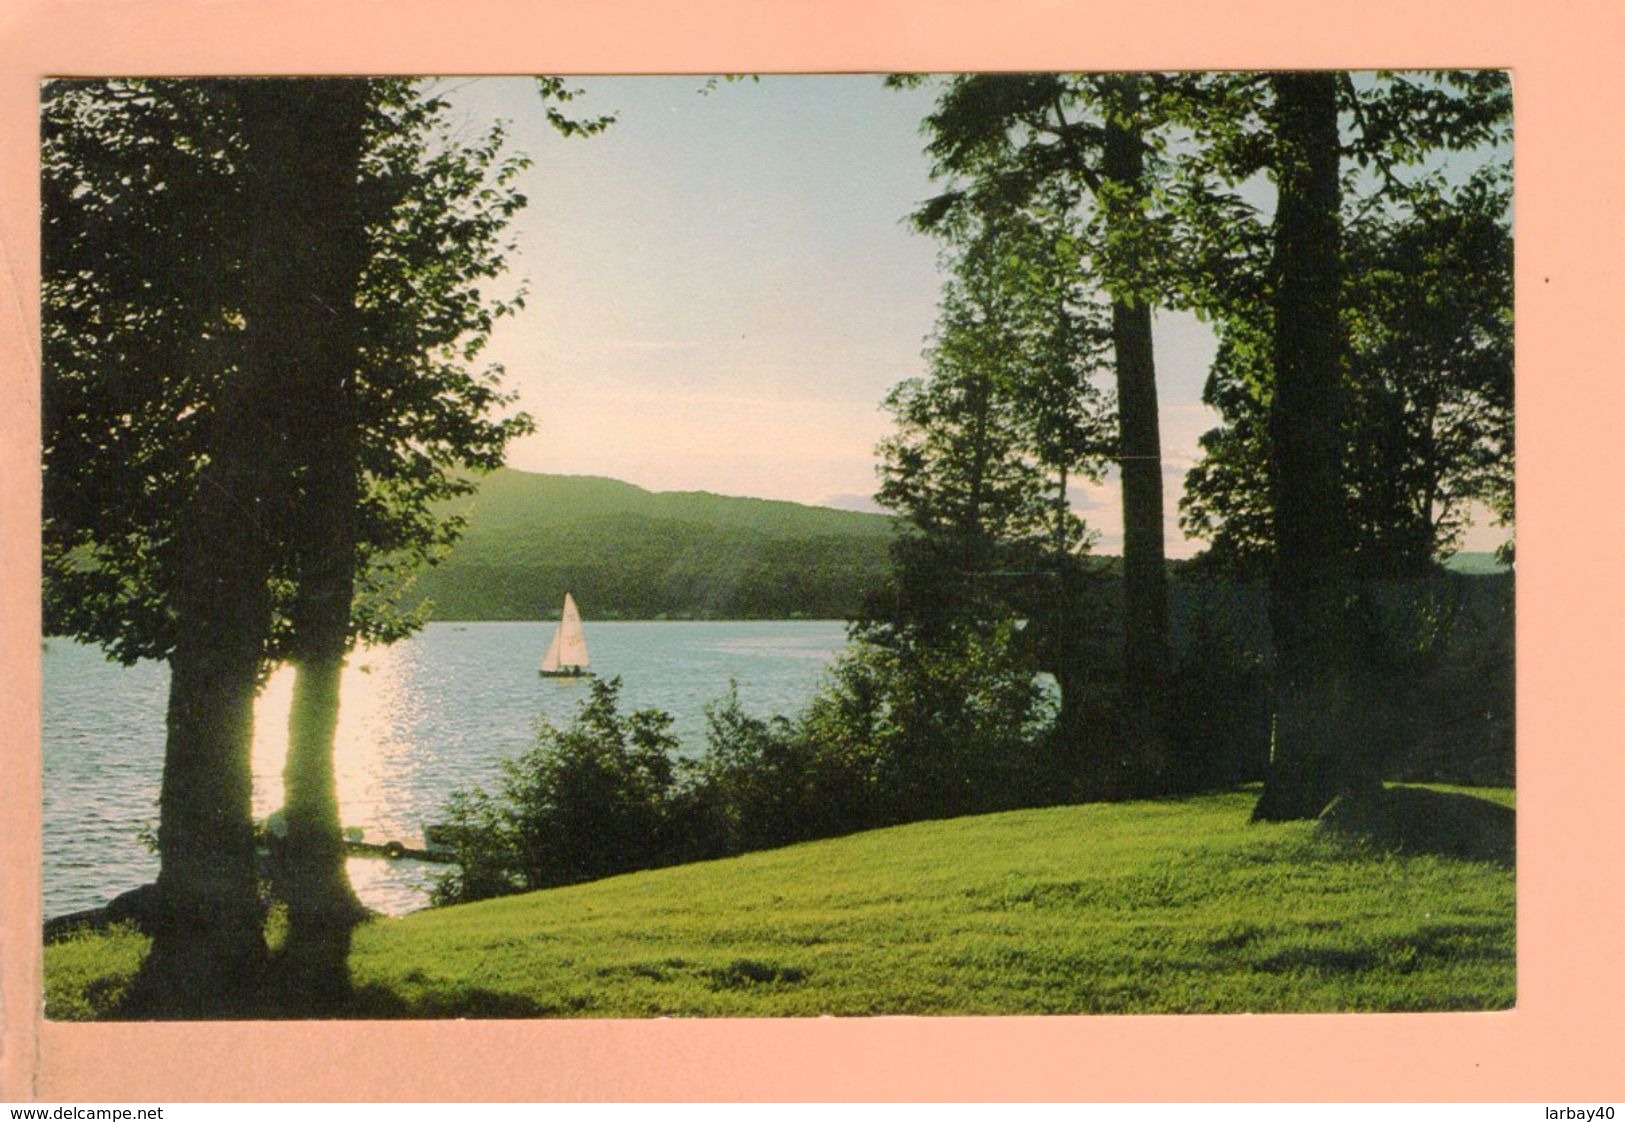 Cpa Cartes Postales Ancienne - Quebec Lac St Joseph - Québec - Beauport